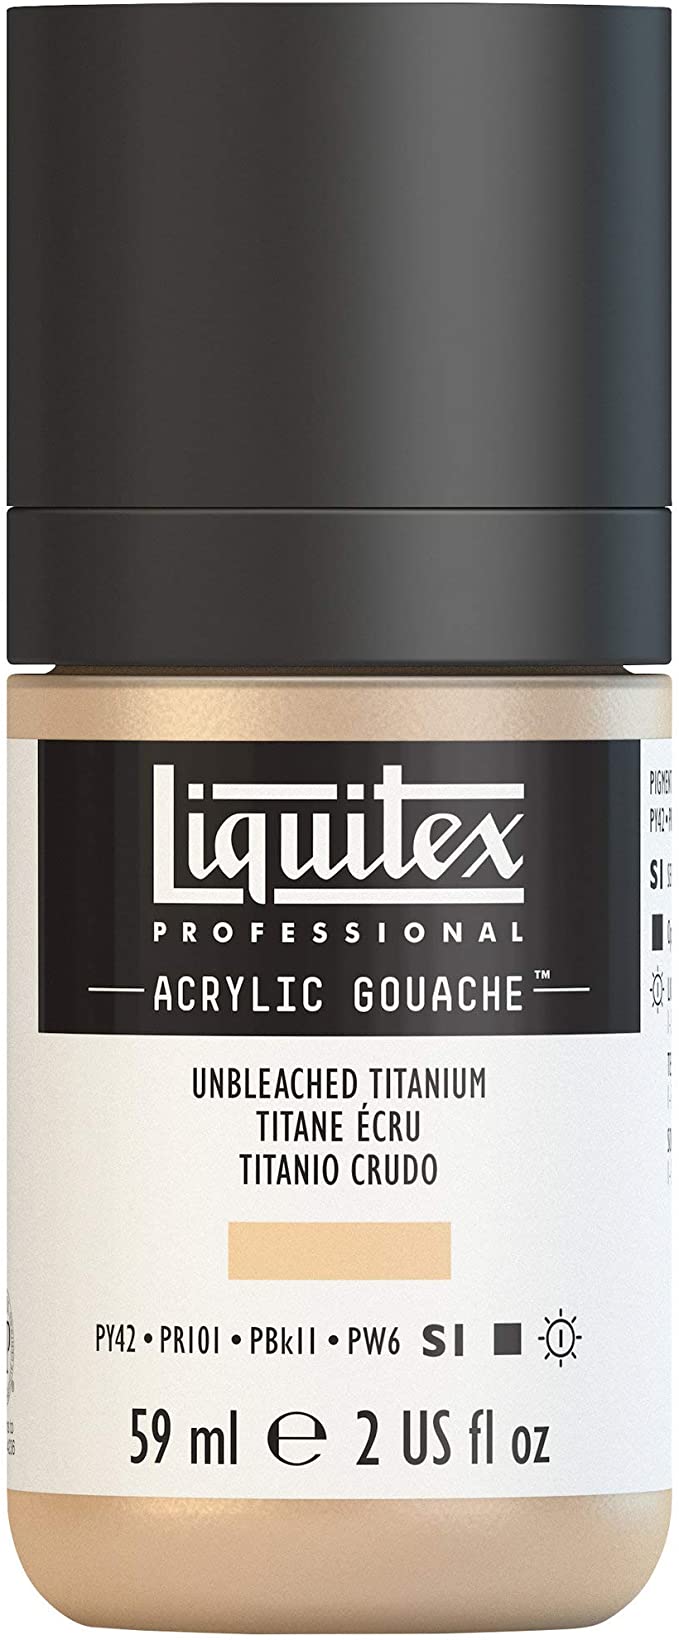 Liquitex Professional Acrylic Gouache 2-oz bottle, Unbleached Titanium